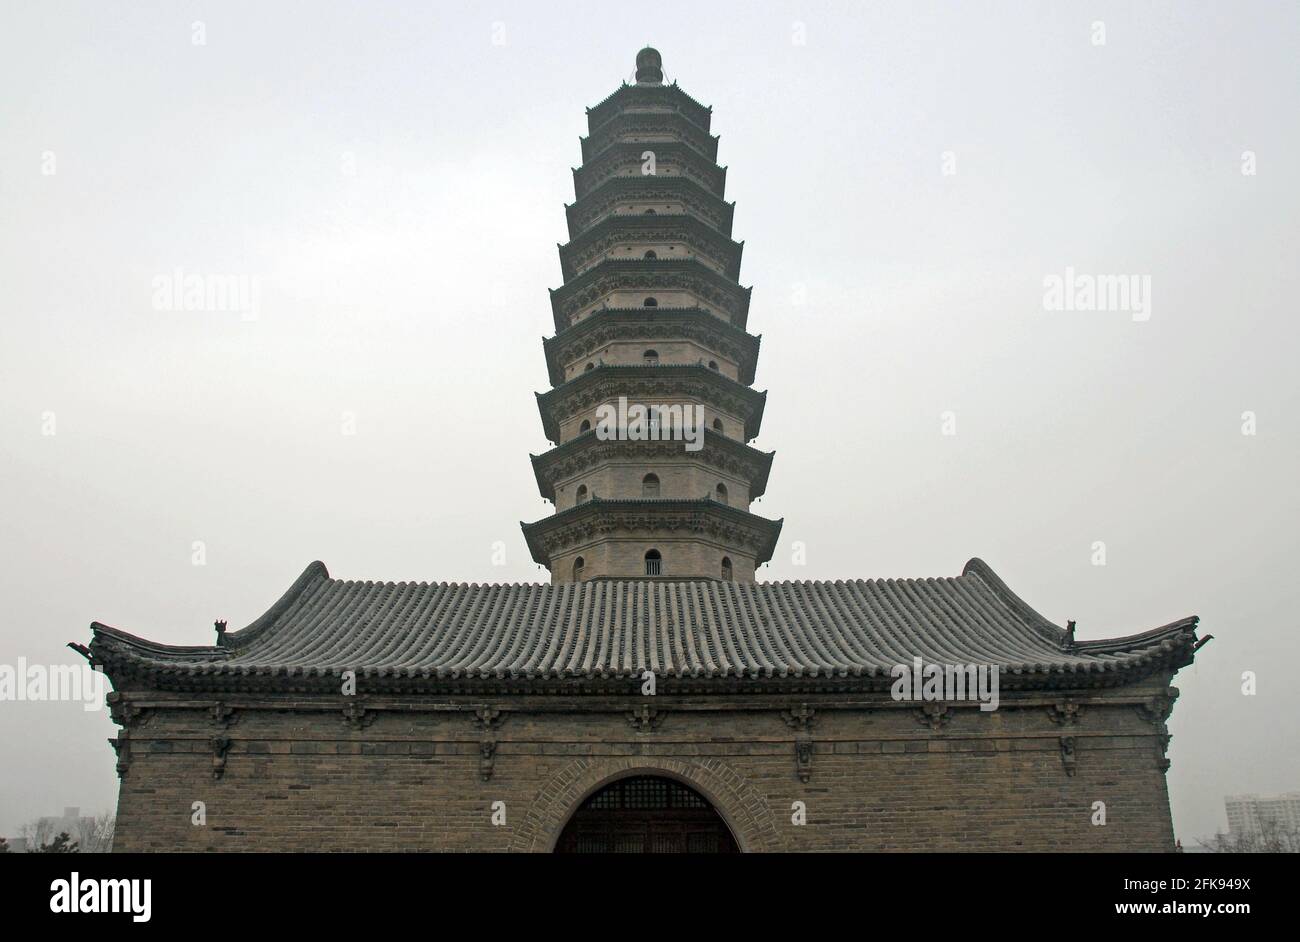 Una delle famose pagode al Tempio della Pagoda Gemella (Tempio di Yongzuo) a Taiyuan, Shanxi, Cina. Le pagode sono uno dei punti di riferimento principali di Taiyuan. Foto Stock